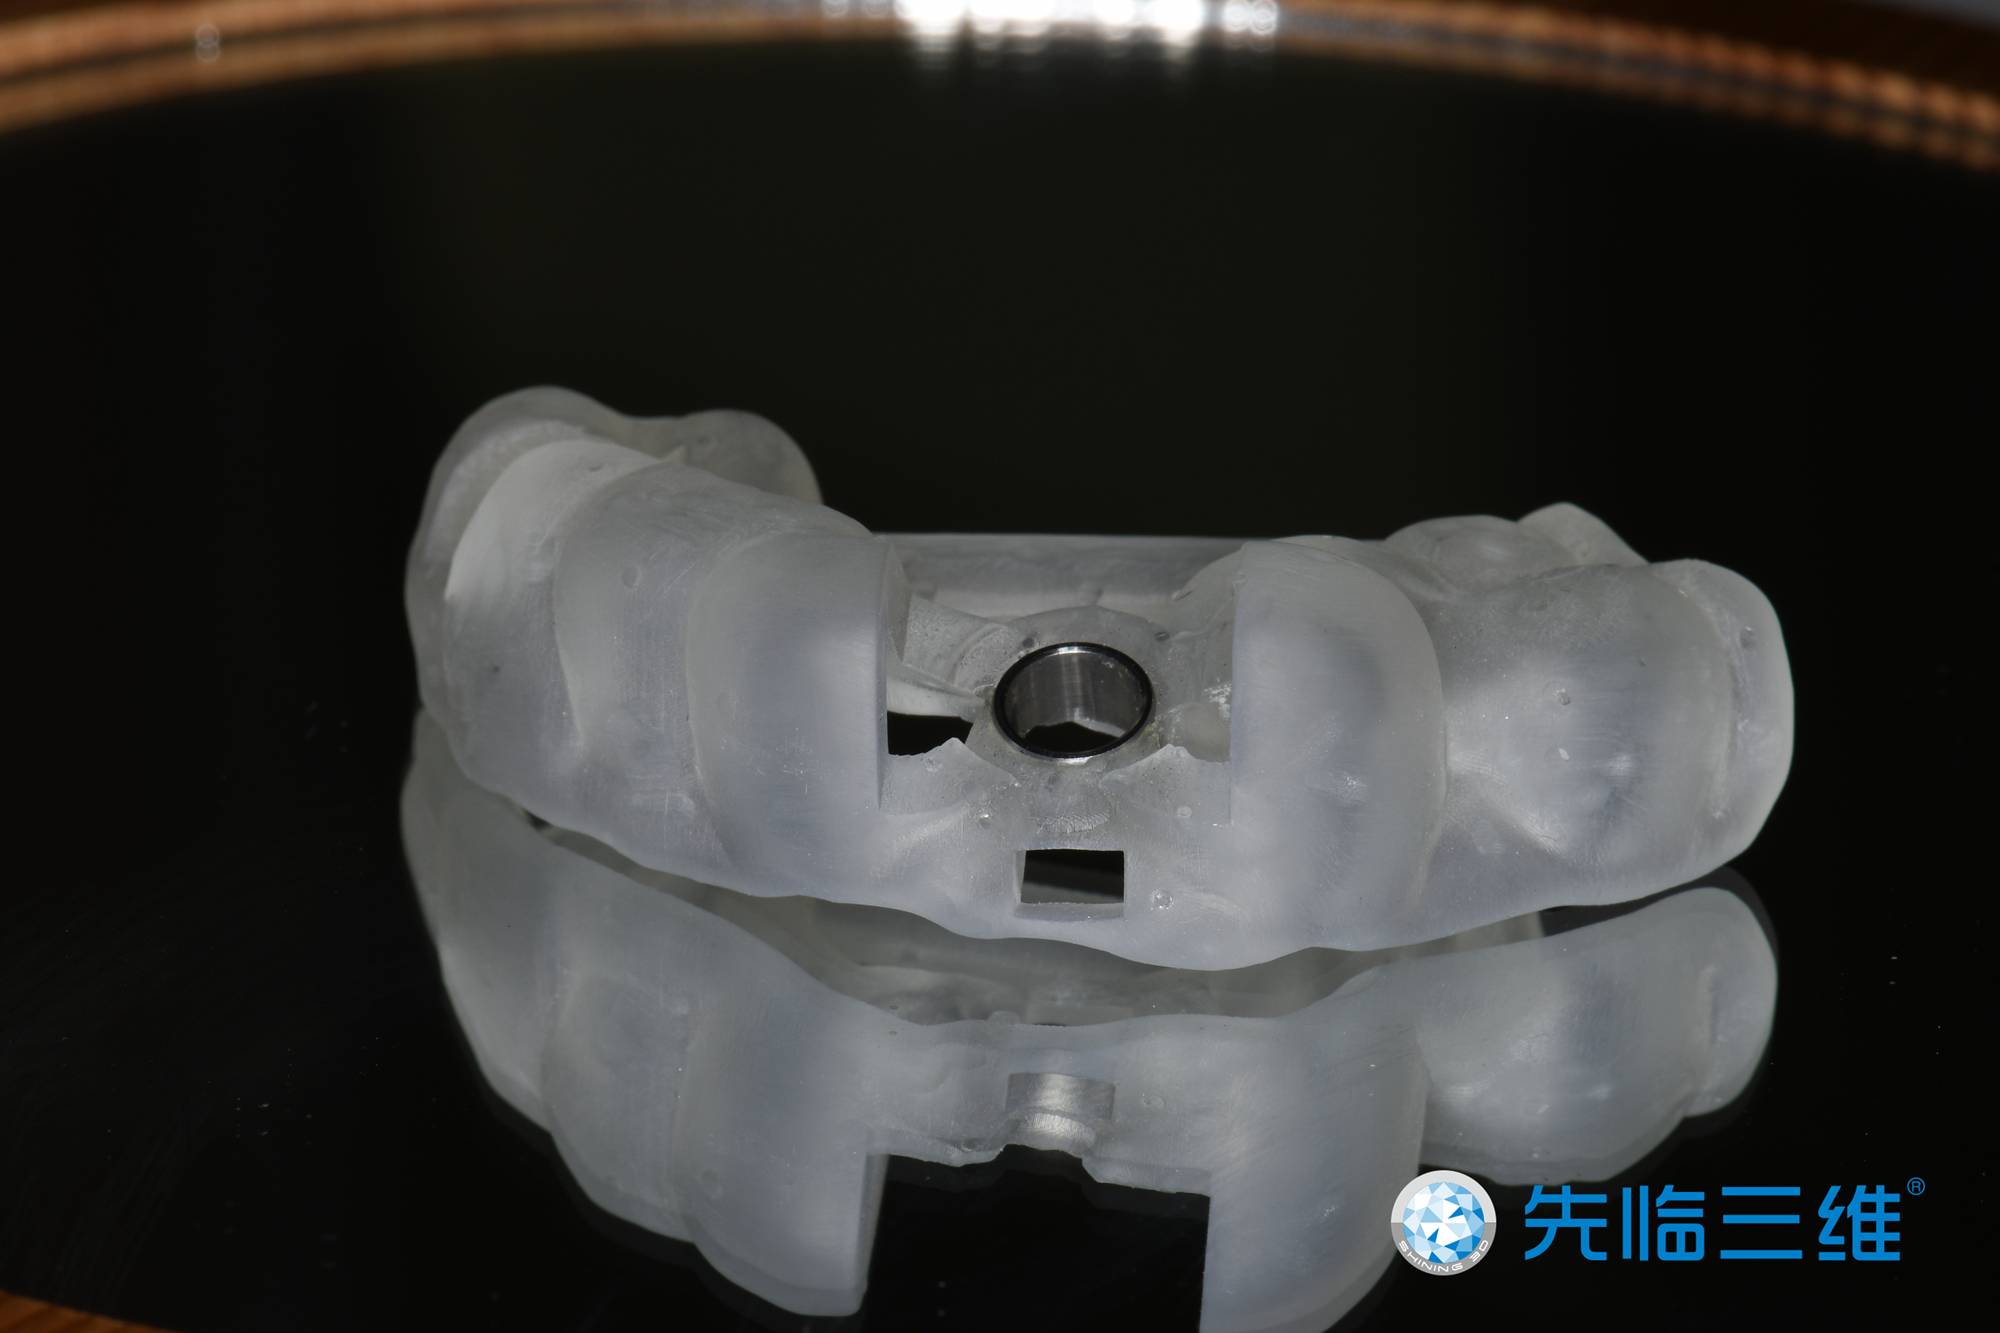 北京中医医院顺义医院口腔科完成首例数字化导板引导下全口无牙颌种植-医院汇-丁香园